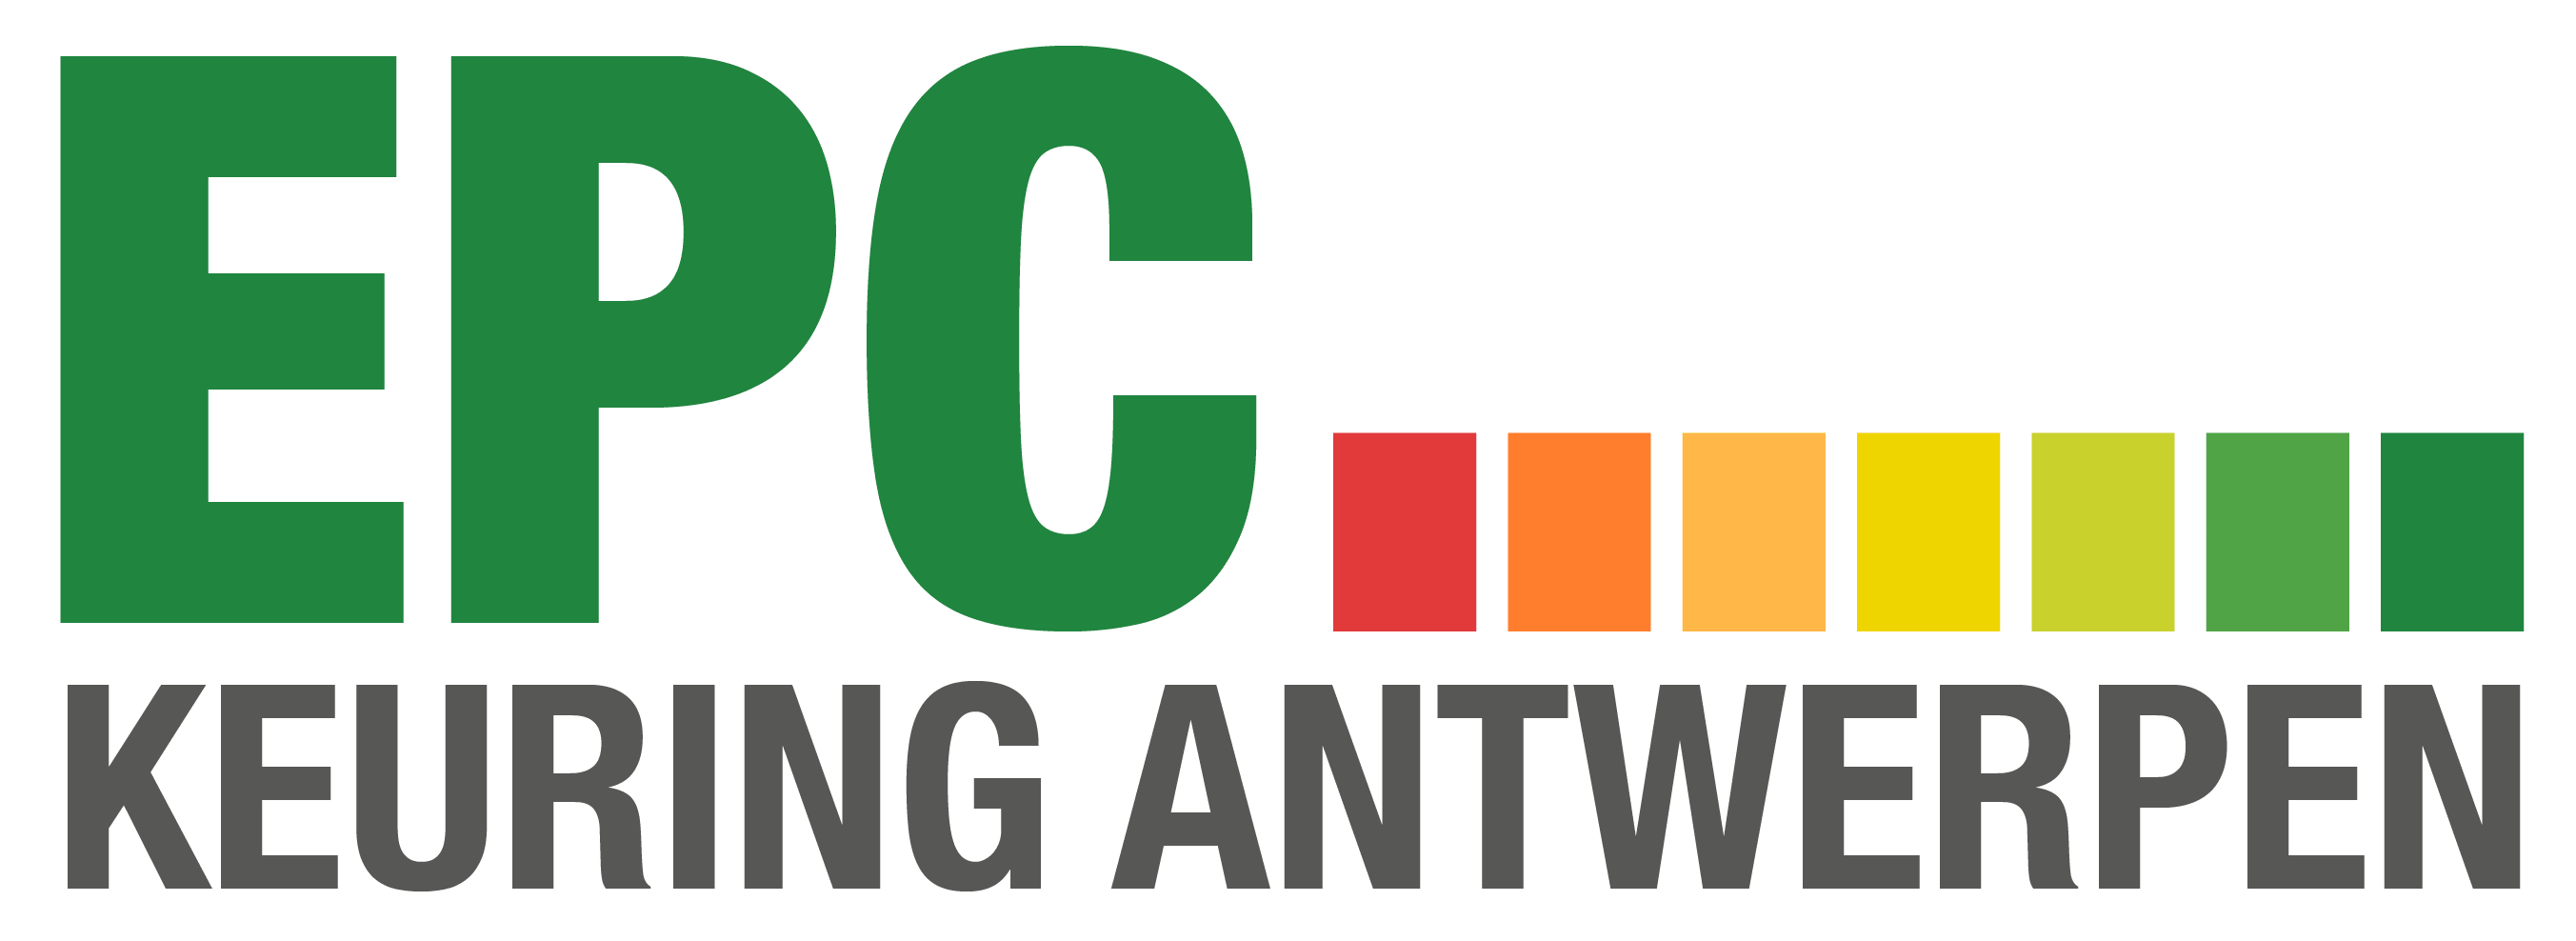 EPC Keuring Antwerpen